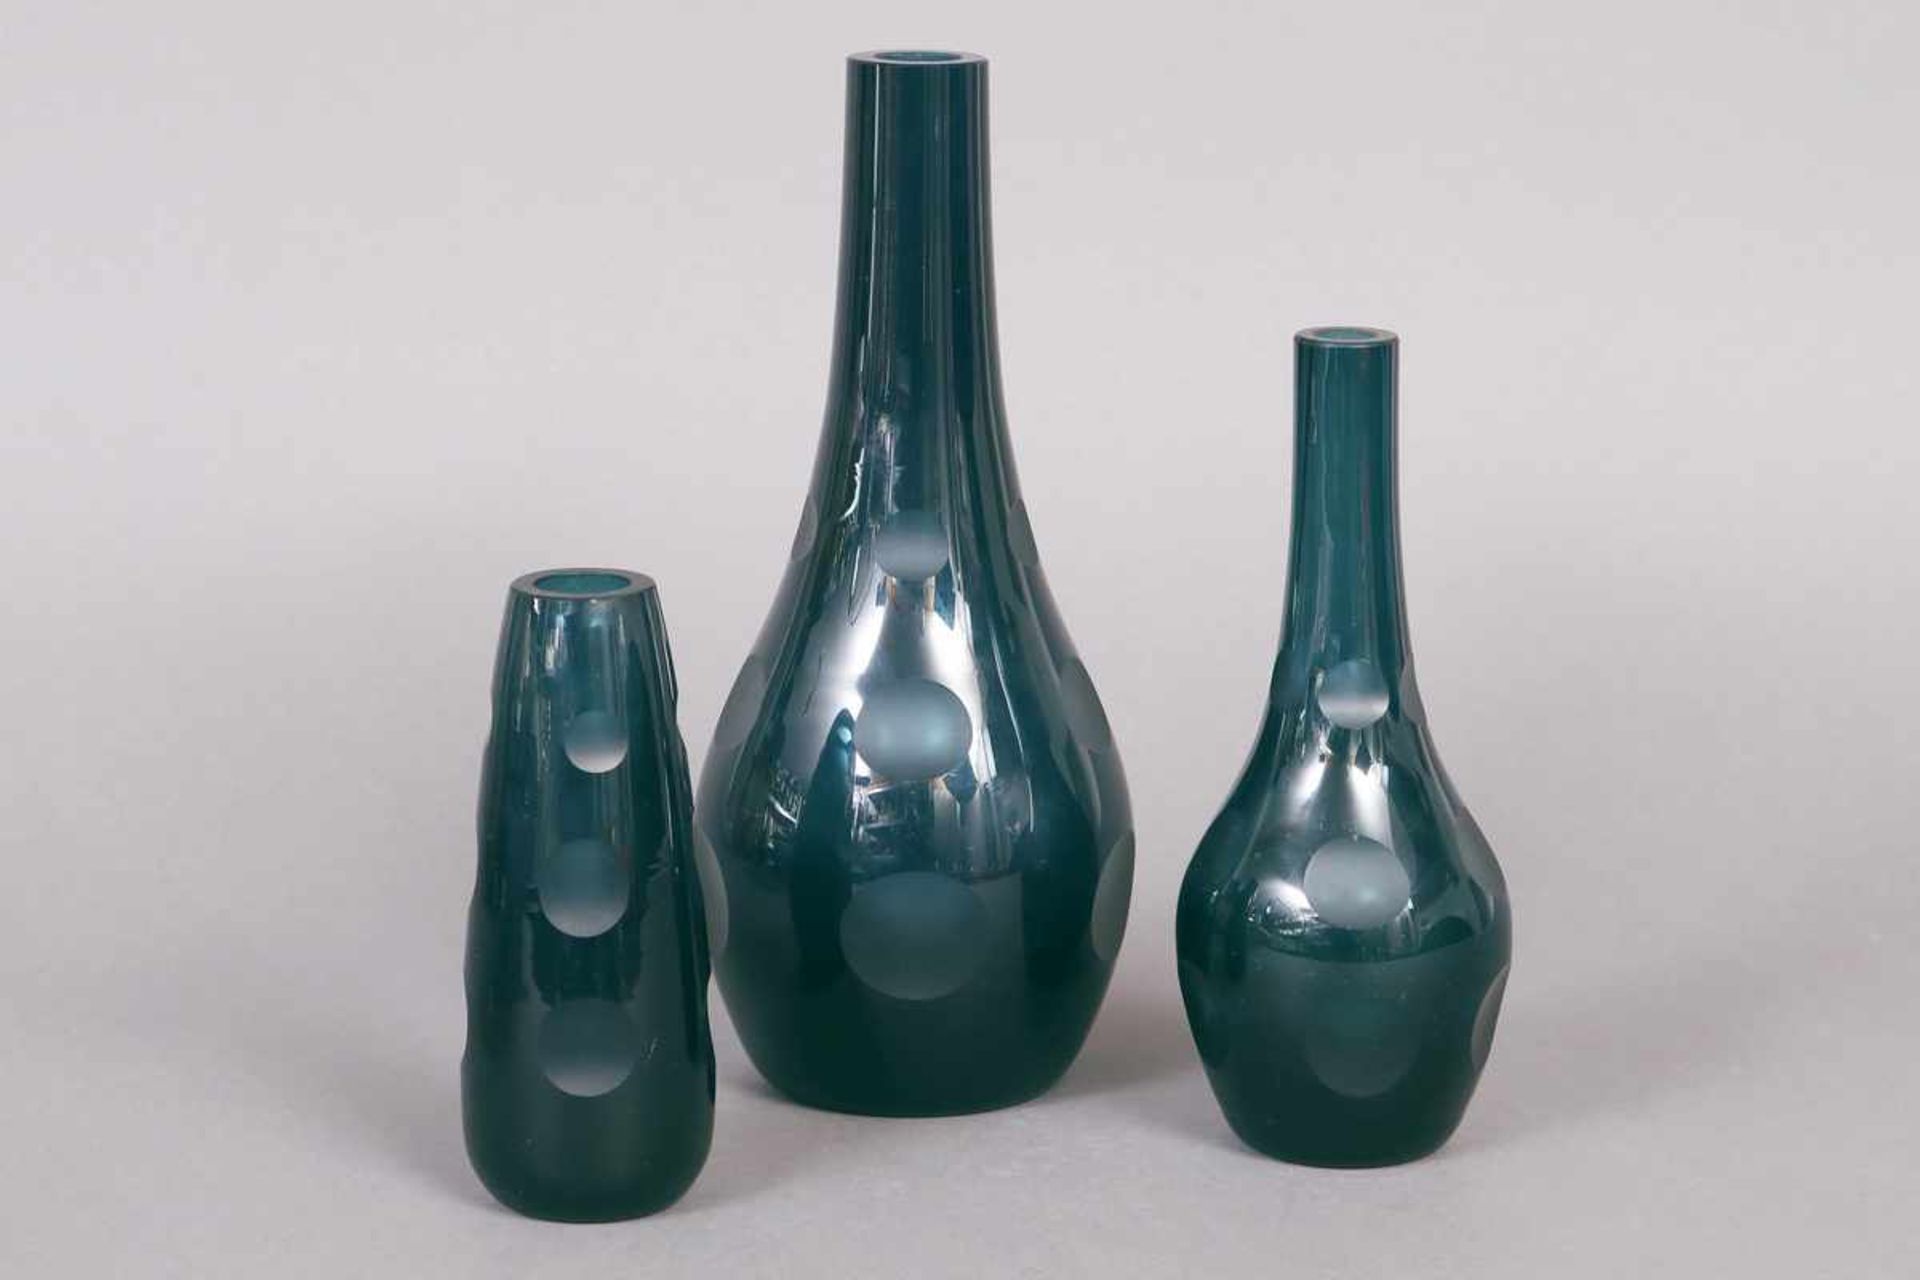 3 Glasvasen petrolfarbenes Glas, wohl Dänemark, um 1970, ungemarkt, Keulenform, Punktschliff, H 15-